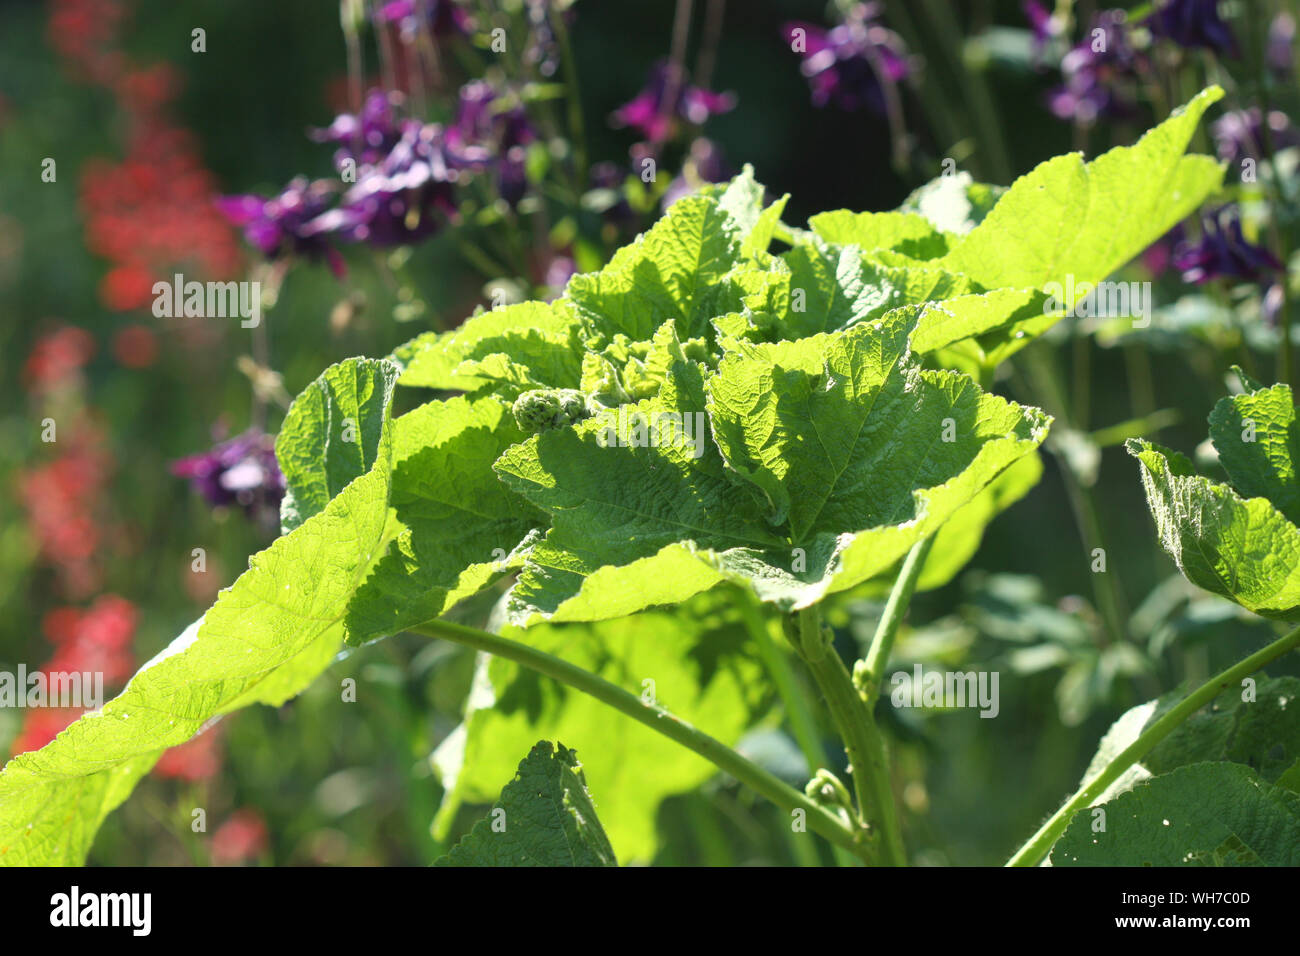 Sunlighted mallow planta que crece en el jardín Foto de stock